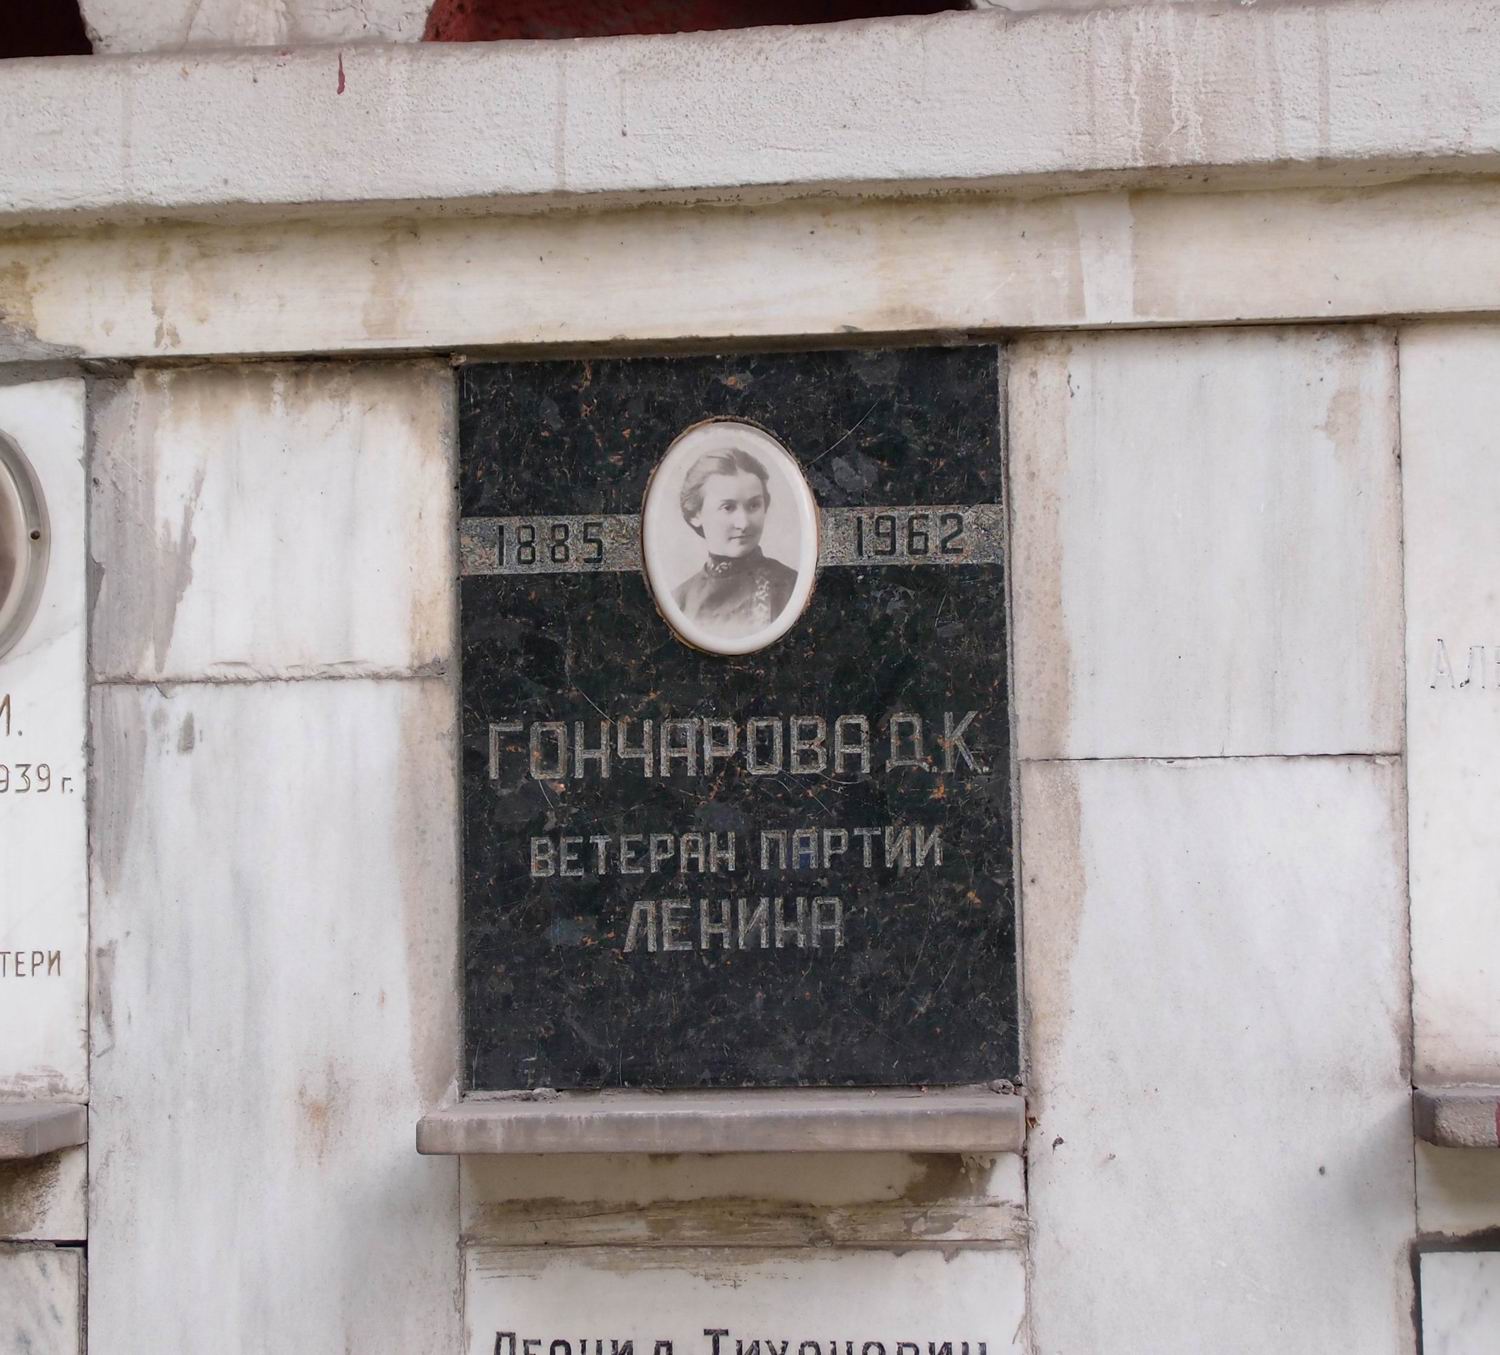 Плита на нише Гончаровой Д.К. (1885-1962), на Новодевичьем кладбище (колумбарий [92]-2-1).